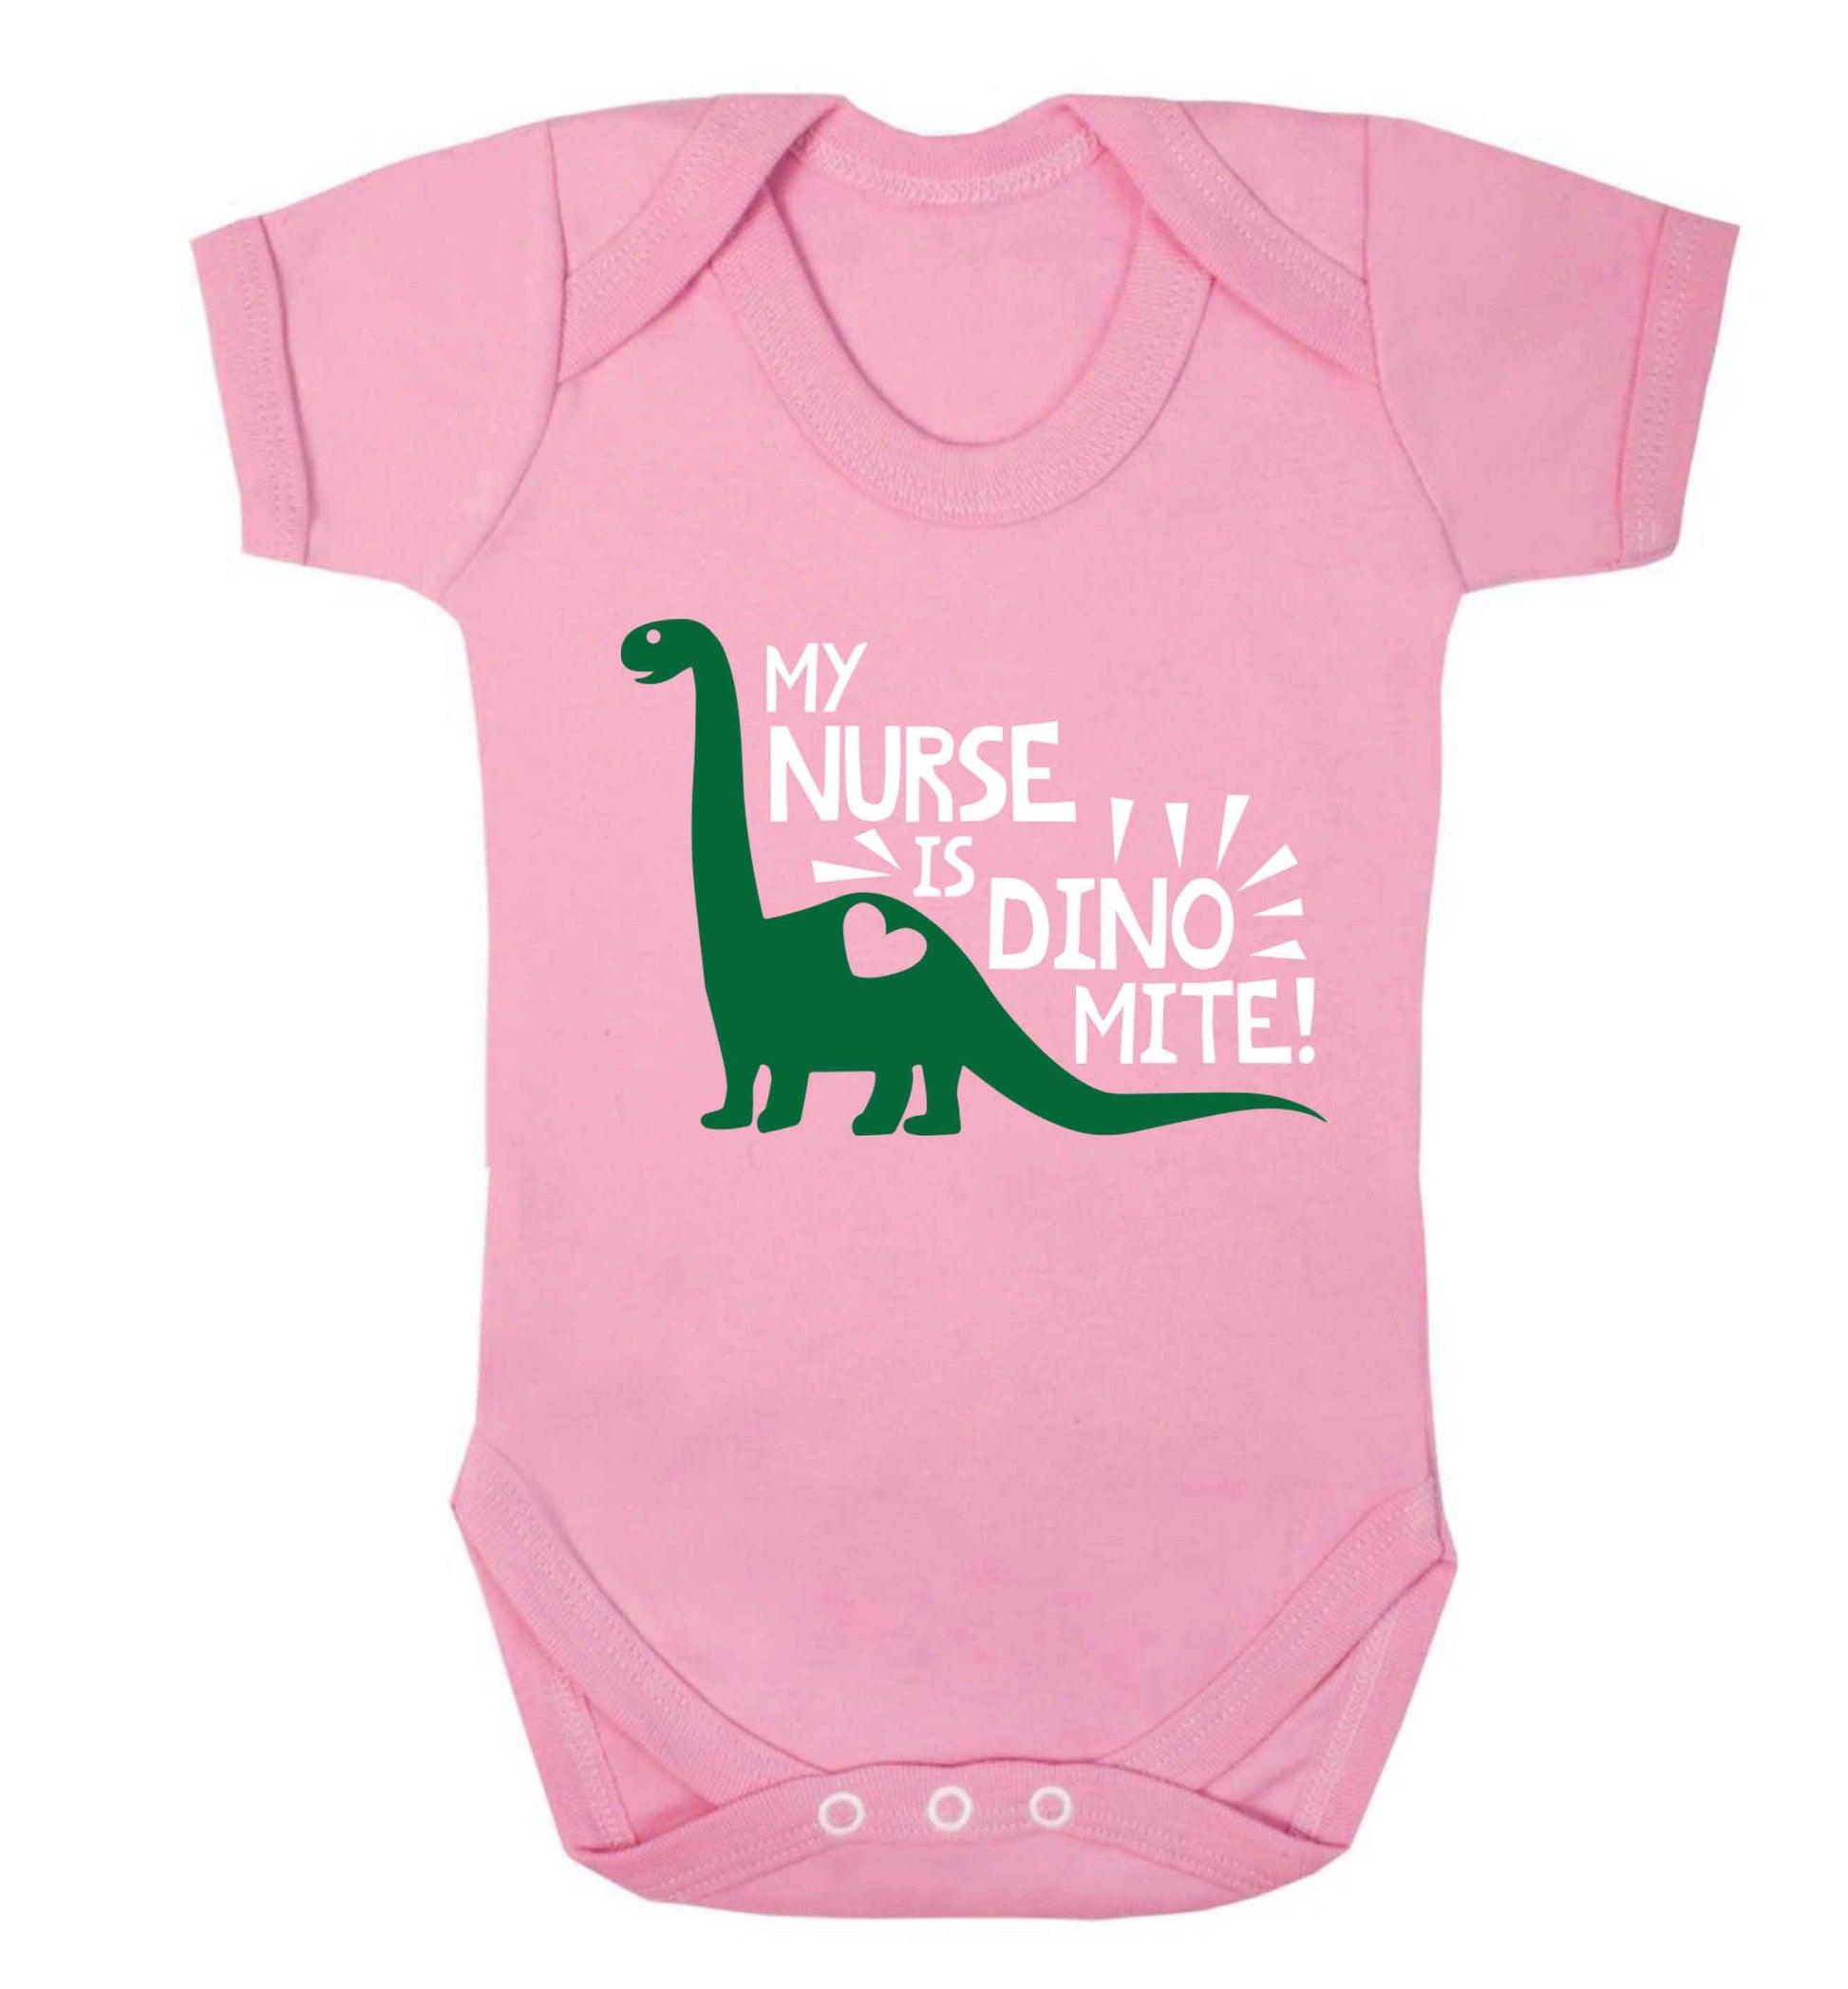 My nurse is dinomite! Baby Vest pale pink 18-24 months